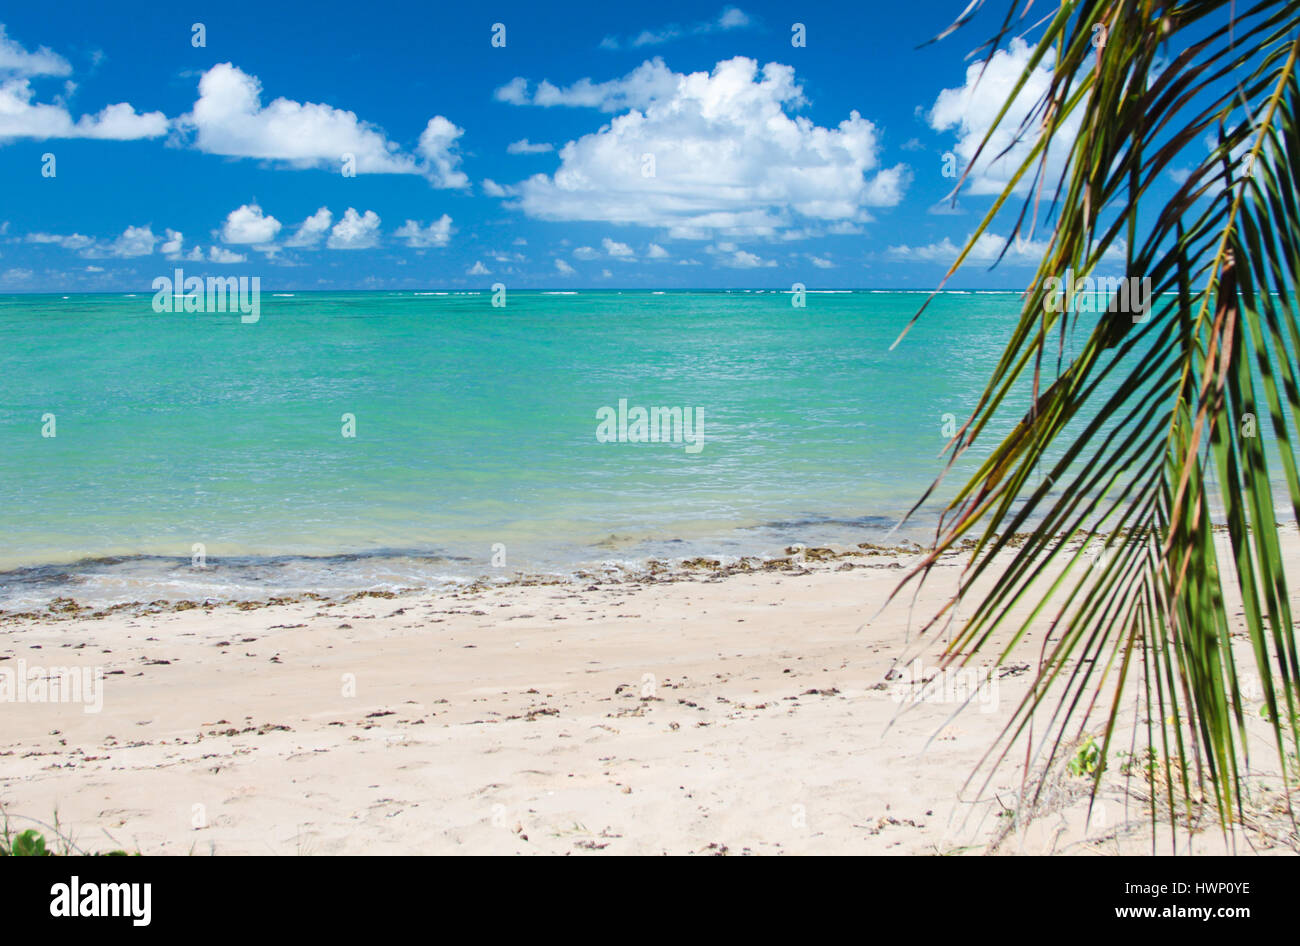 Le vacanze in spiaggia: turchese del mare della spiaggia Patacho, Alagoas, Brasile, considerata una delle più belle spiagge del Brasile. Foto Stock